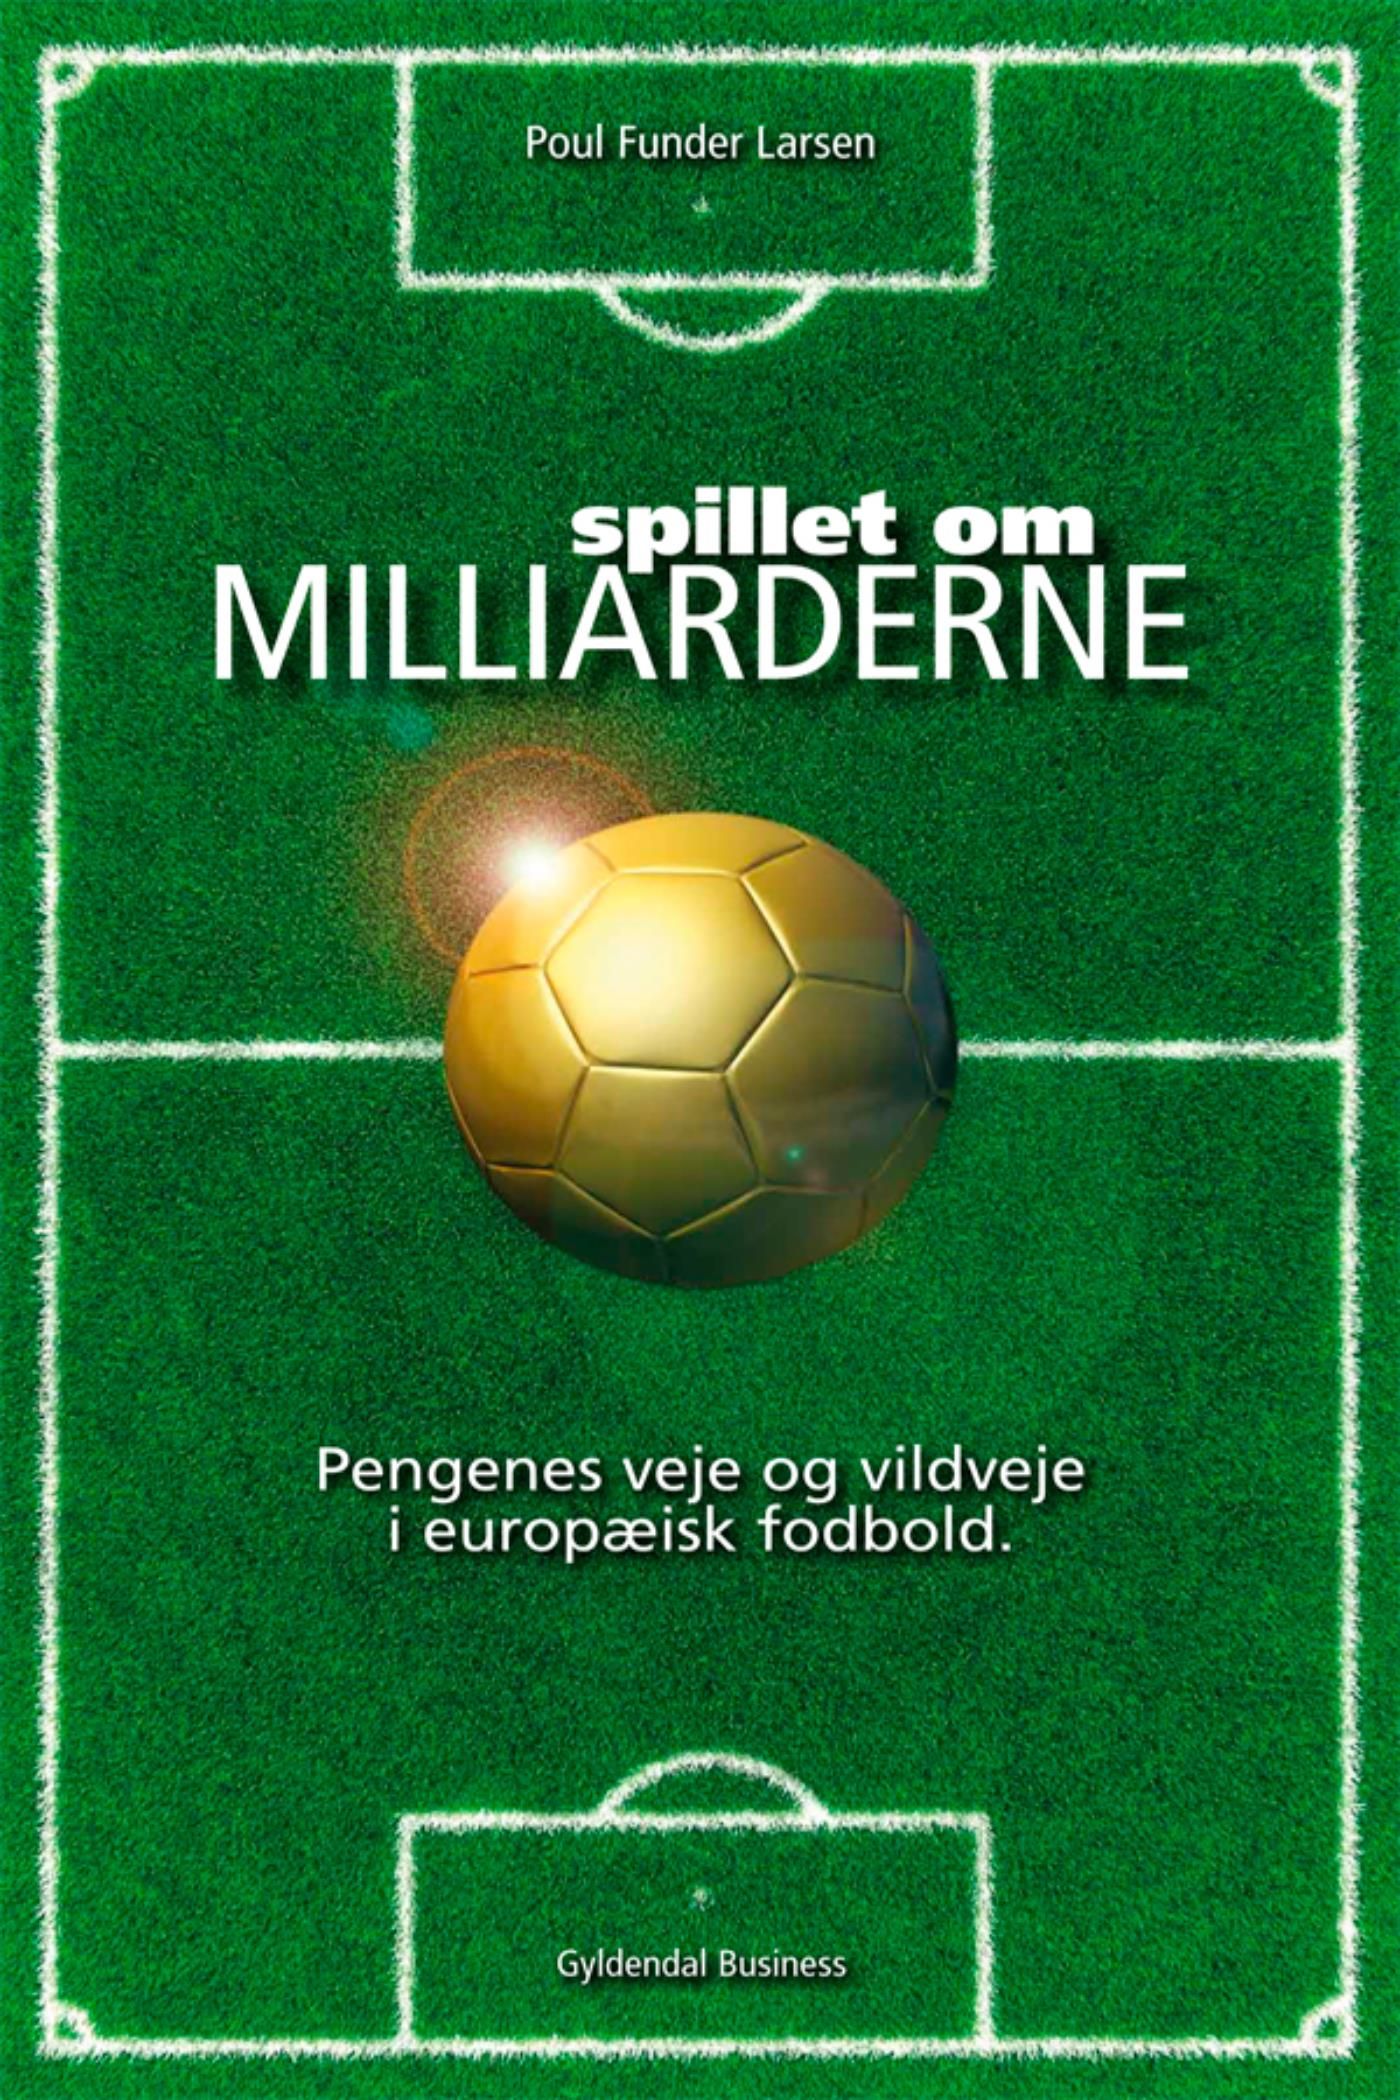 Spillet om milliarderne, e-bog af Poul Funder Larsen